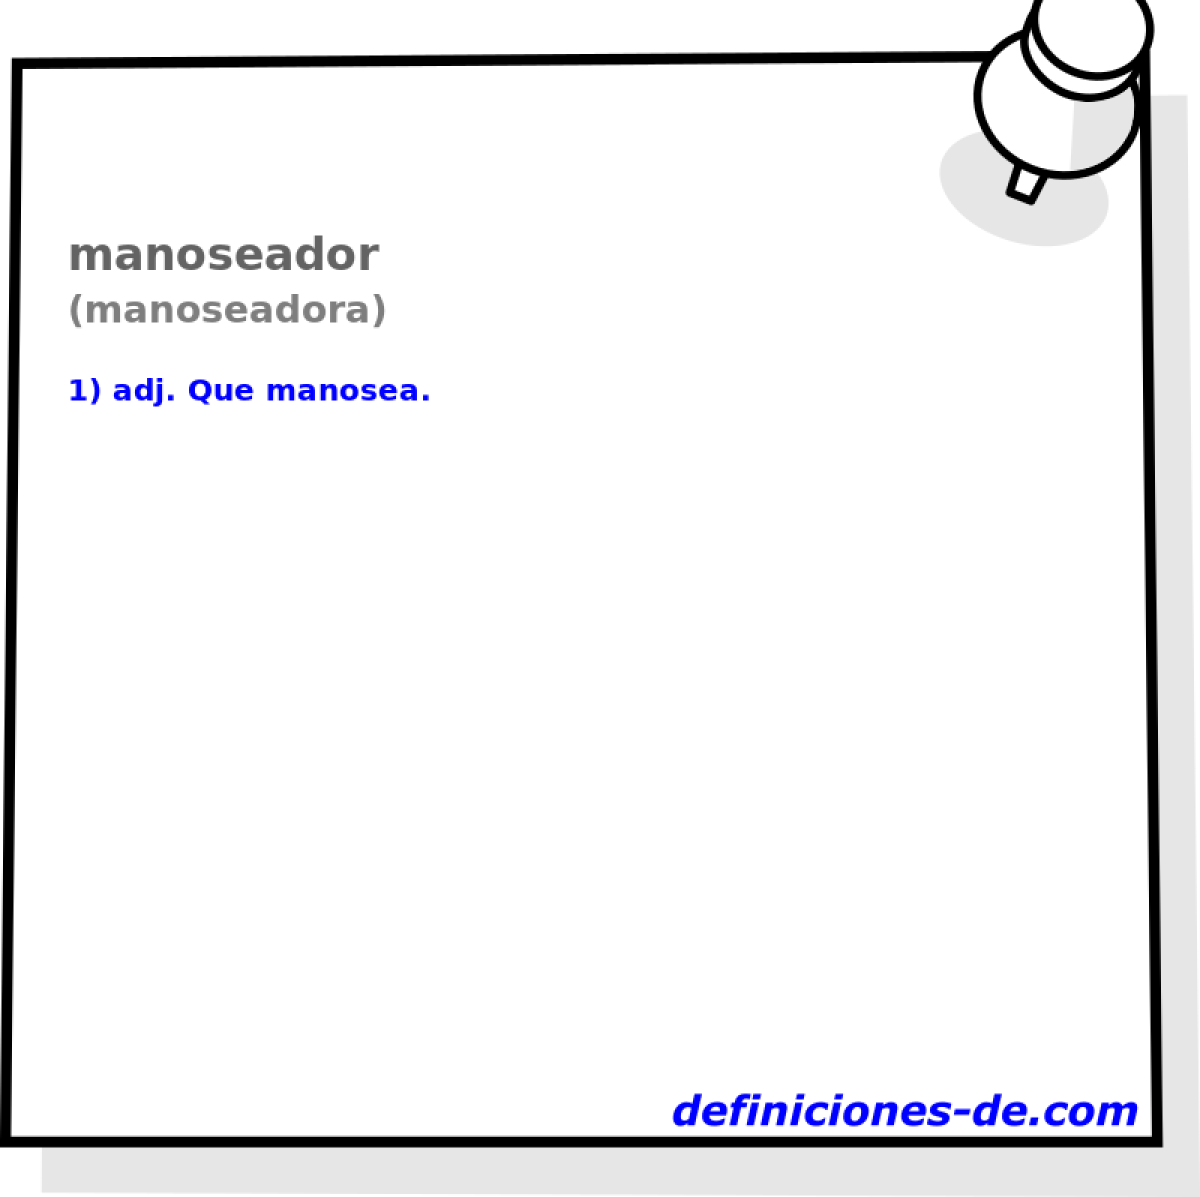 manoseador (manoseadora)